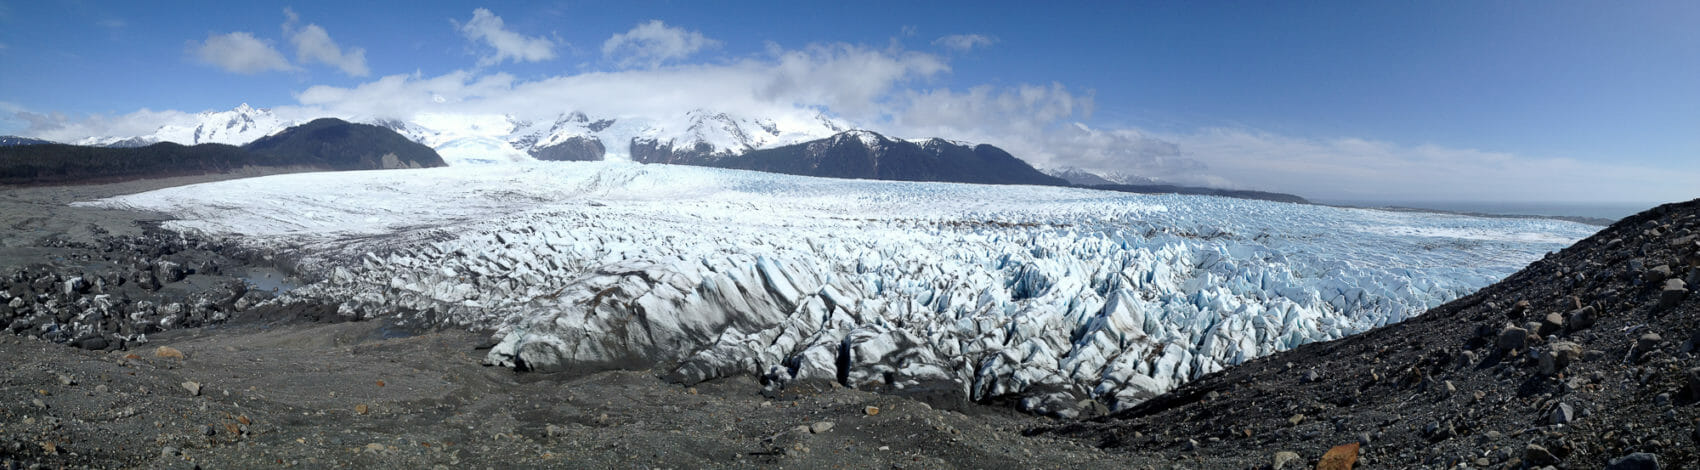 La Perouse Glacier in Glacier Bay National Park